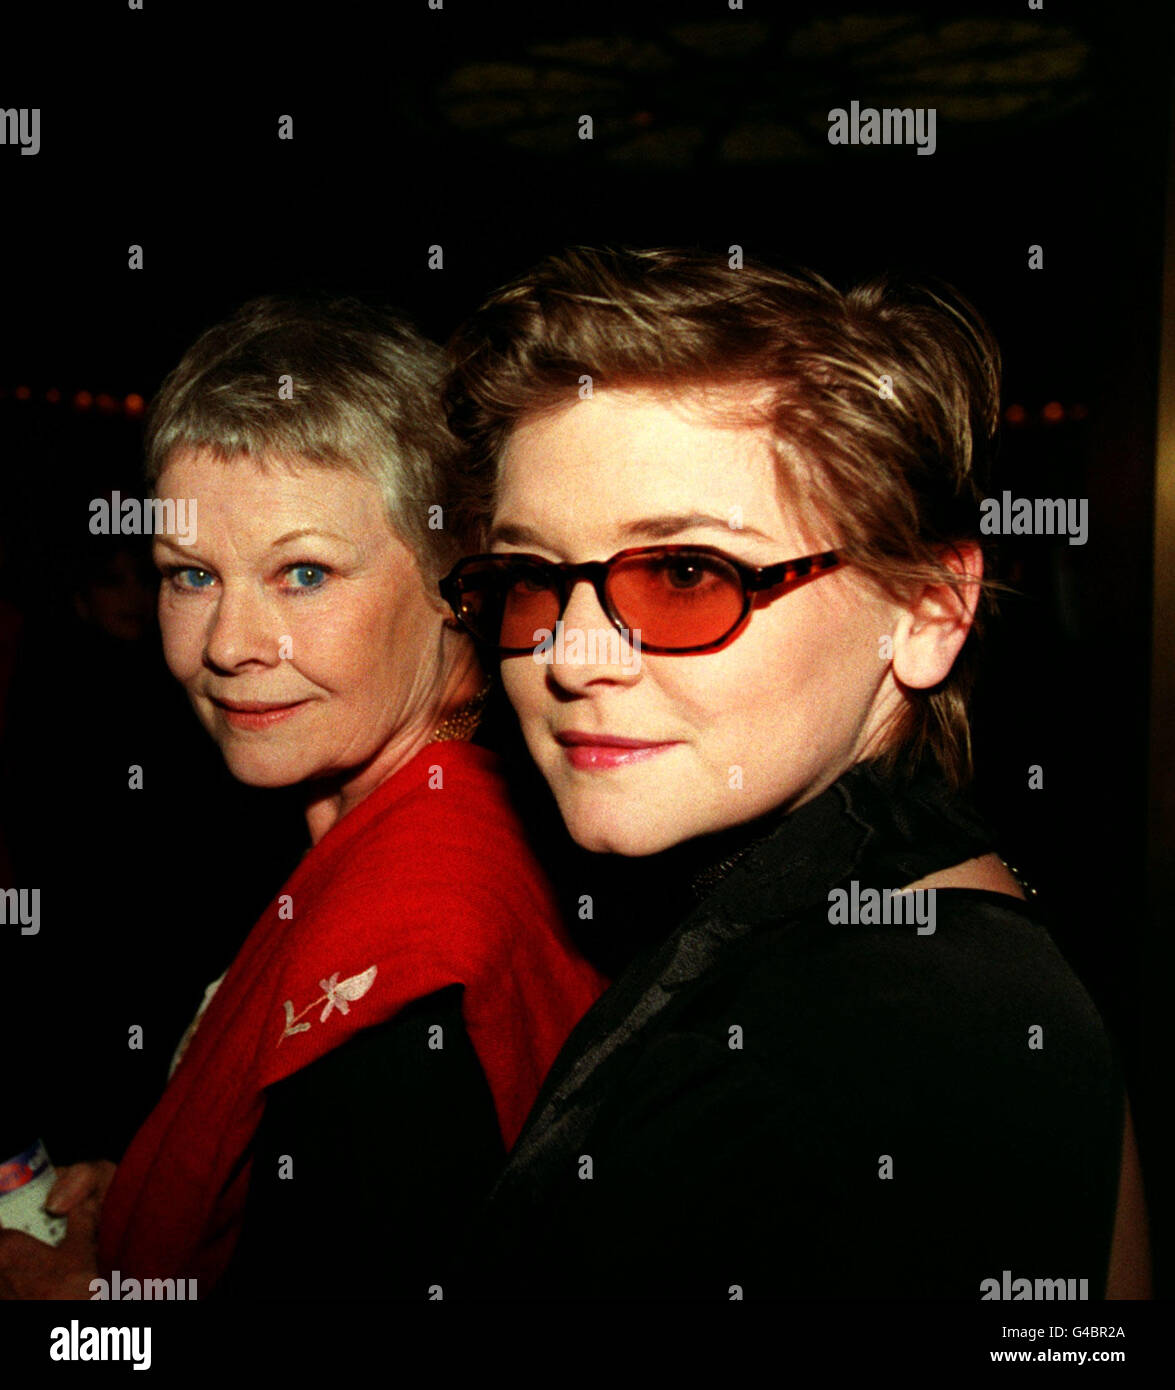 PA NEWS FOTO 29/4/98 attrice Dame Judi Dench e figlia FINTY WILLIAMS arrivano all'apertura notturna di 'SHOWBOAT' al Prince Edward Theatre di Londra Foto Stock